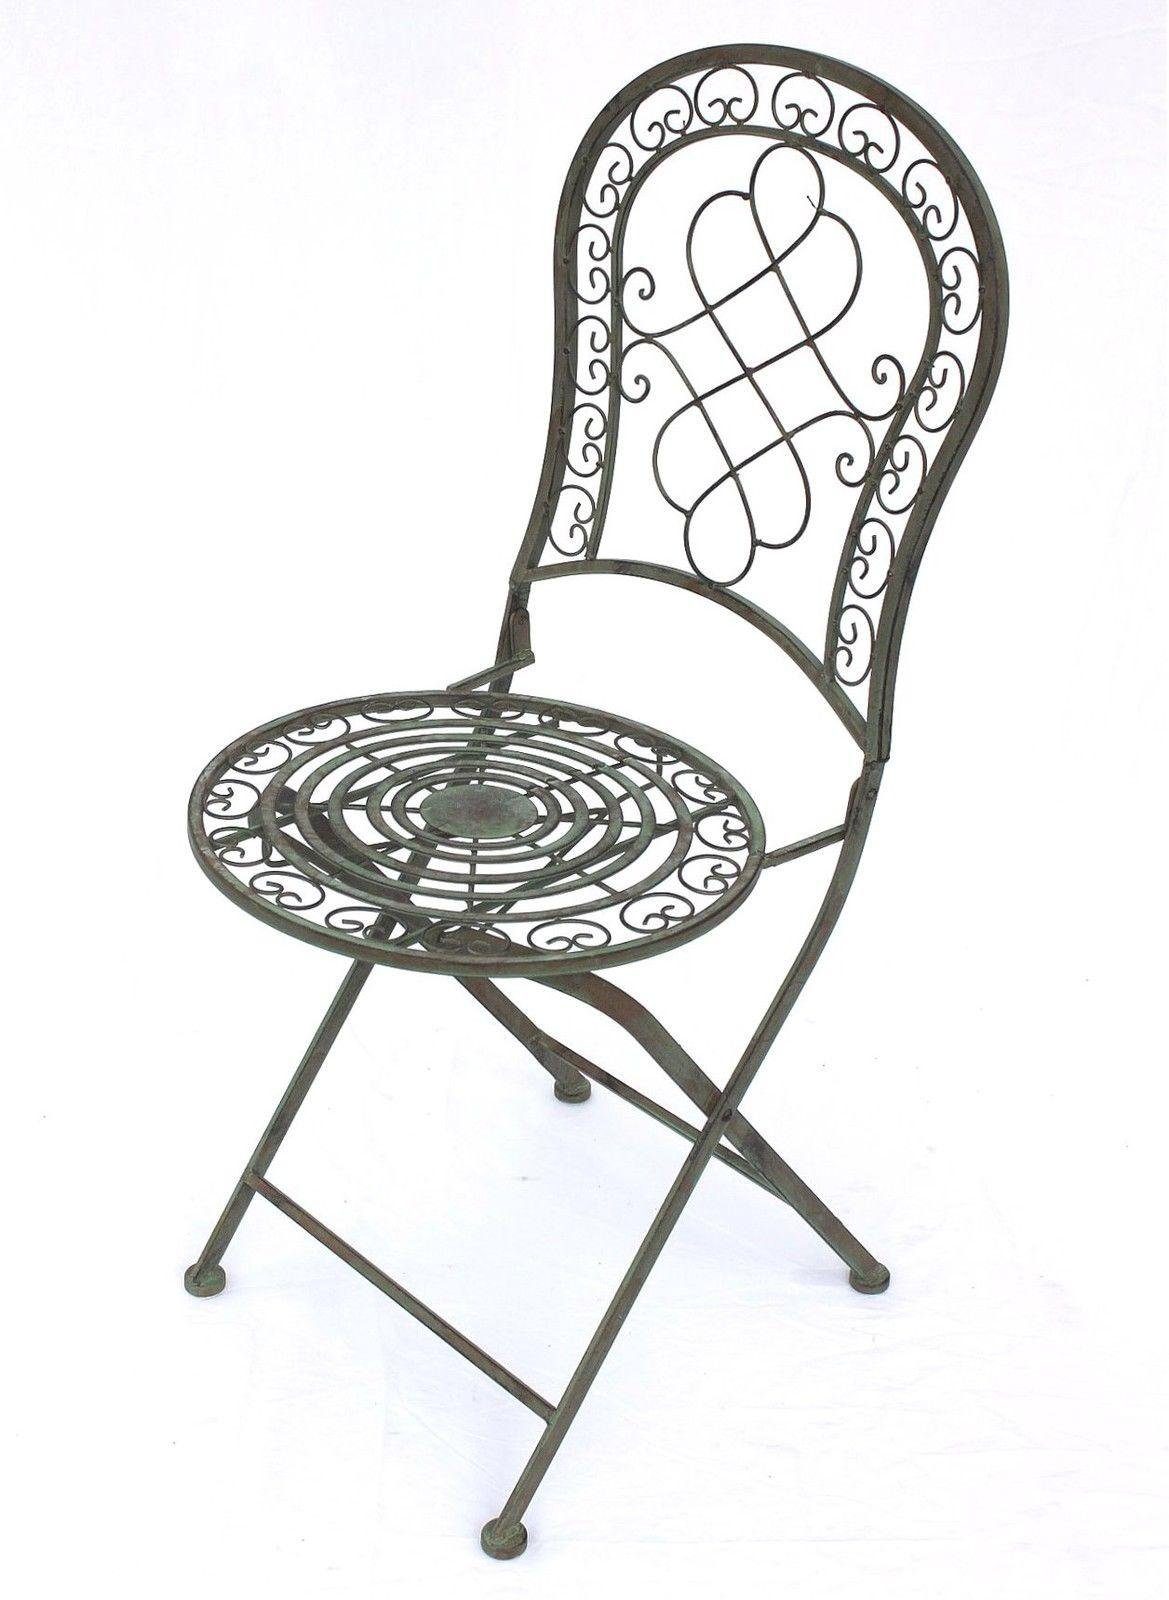 12185 Garten Malega Vintage Nostalgie Eisenstuhl Metallstuhl Stuhl Metall Gartenstuhl Antik Patina Eisen DanDiBo